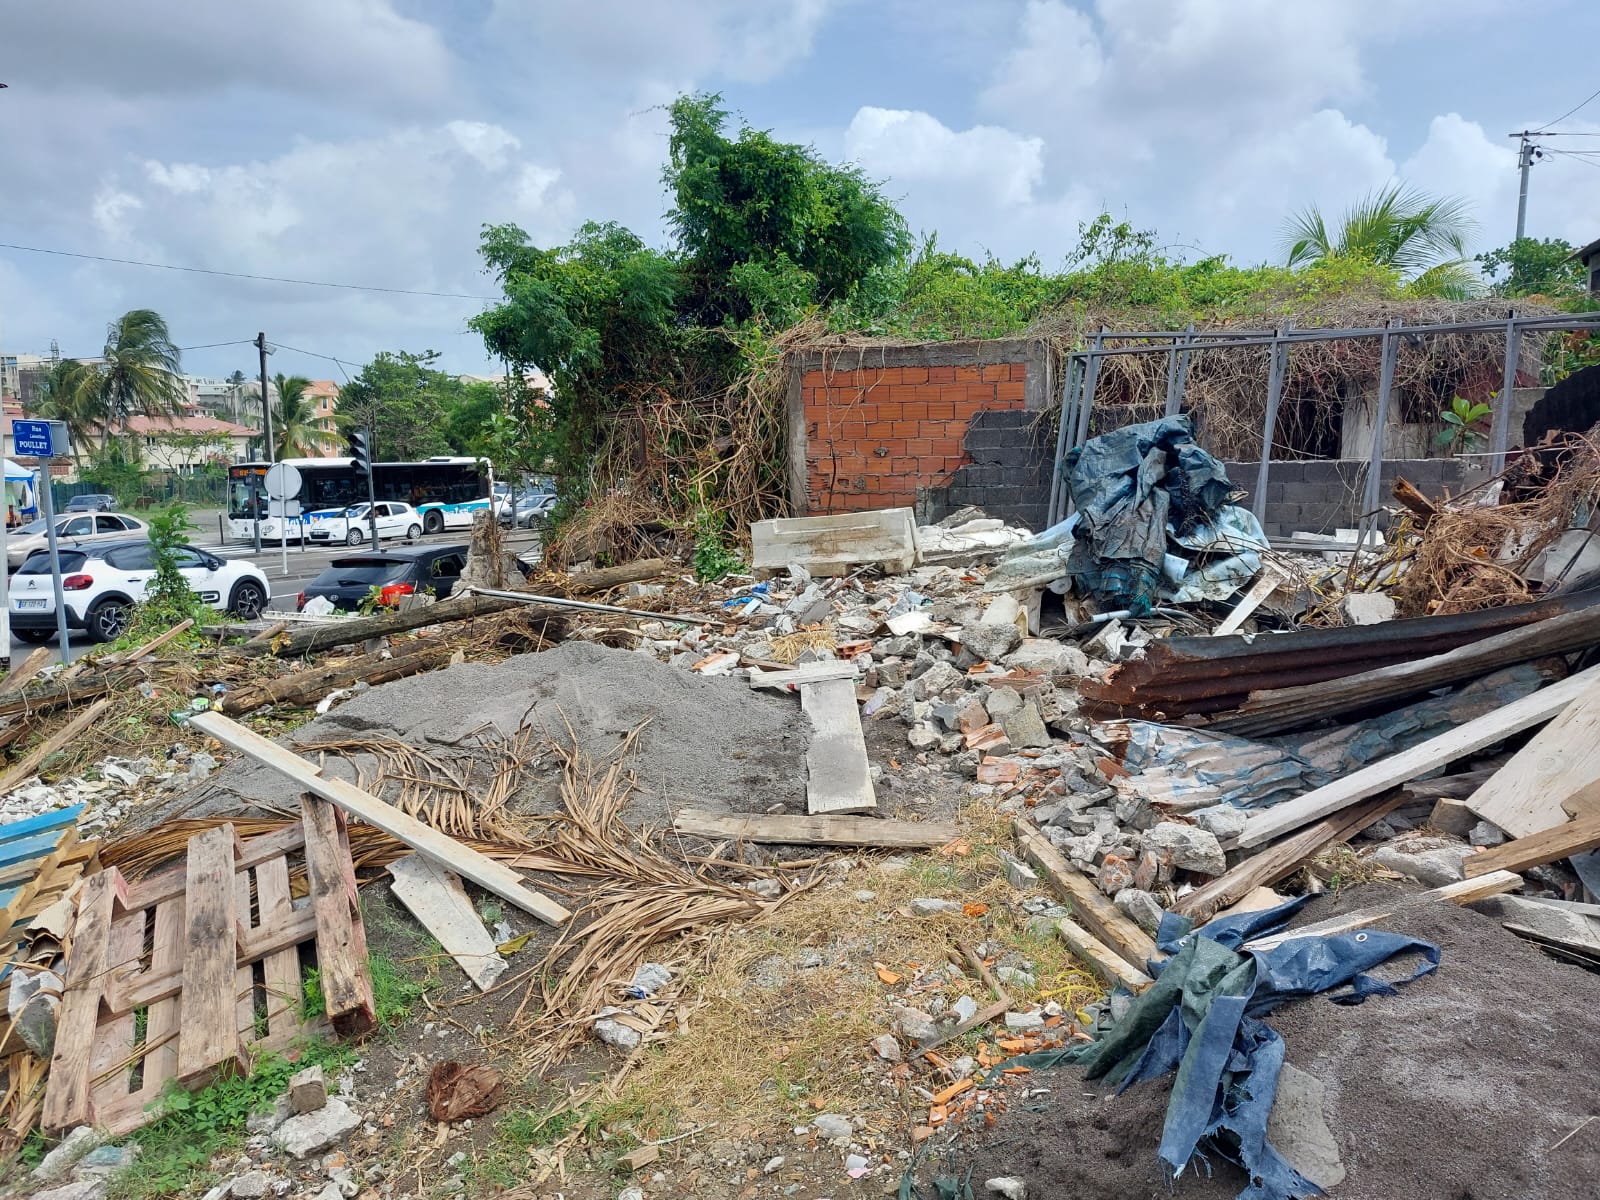     À Sainte-Thérèse, démolitions et nettoyage du quartier continuent

